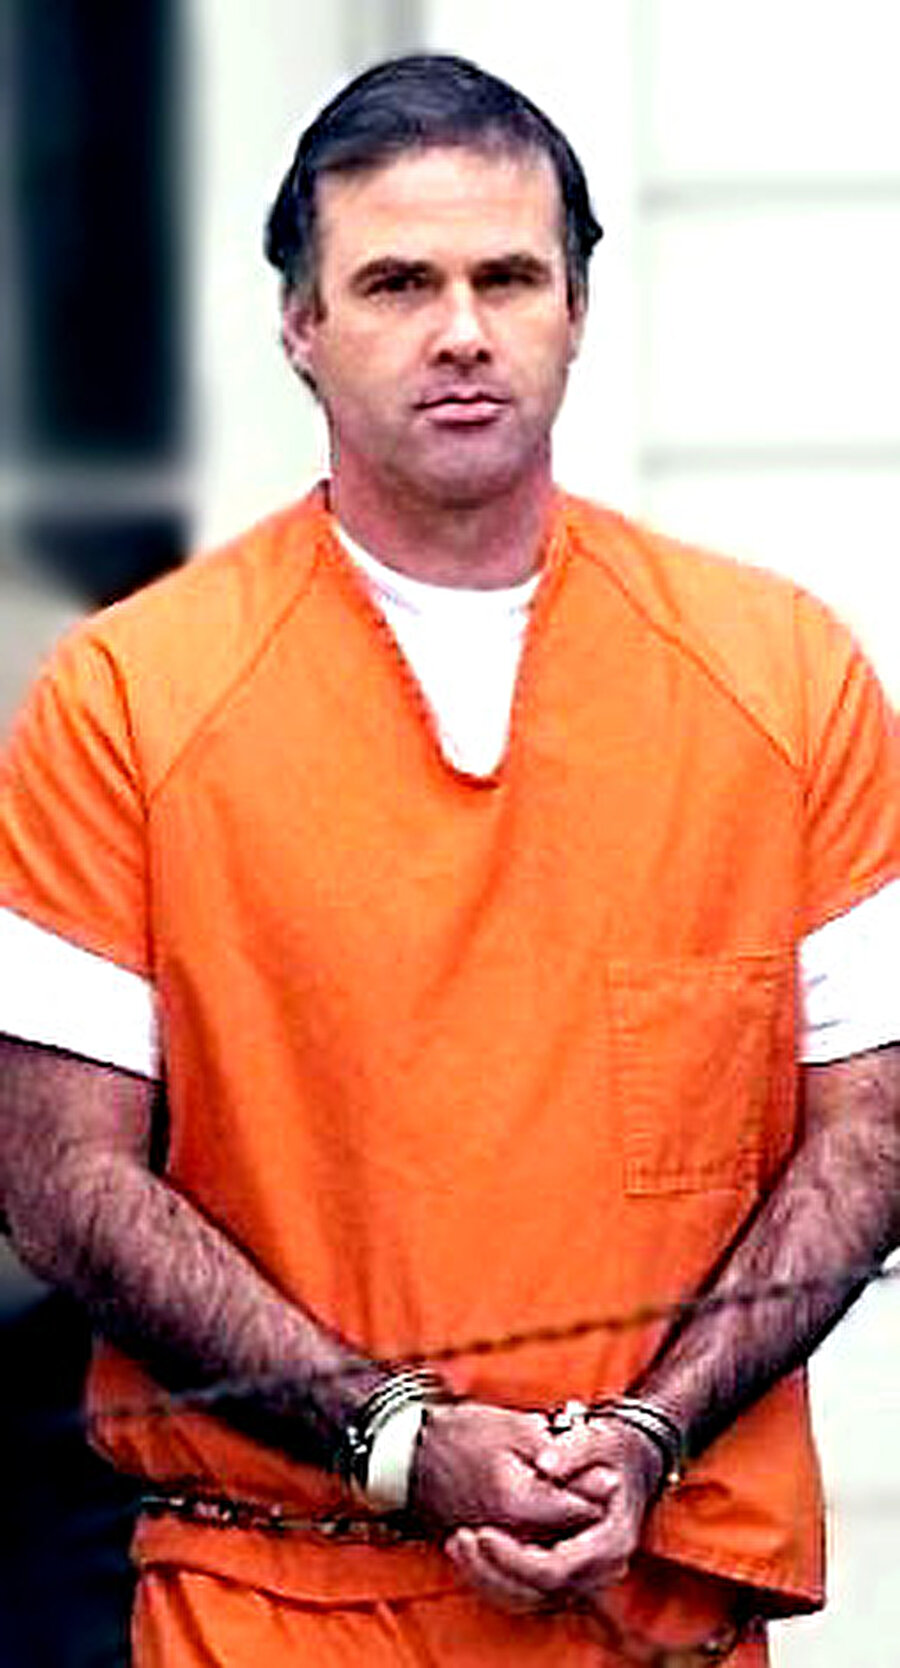 Cary Stayner
Cinayet işlediği tarih aralığı: 1999
Cinayet sayısı: 4
